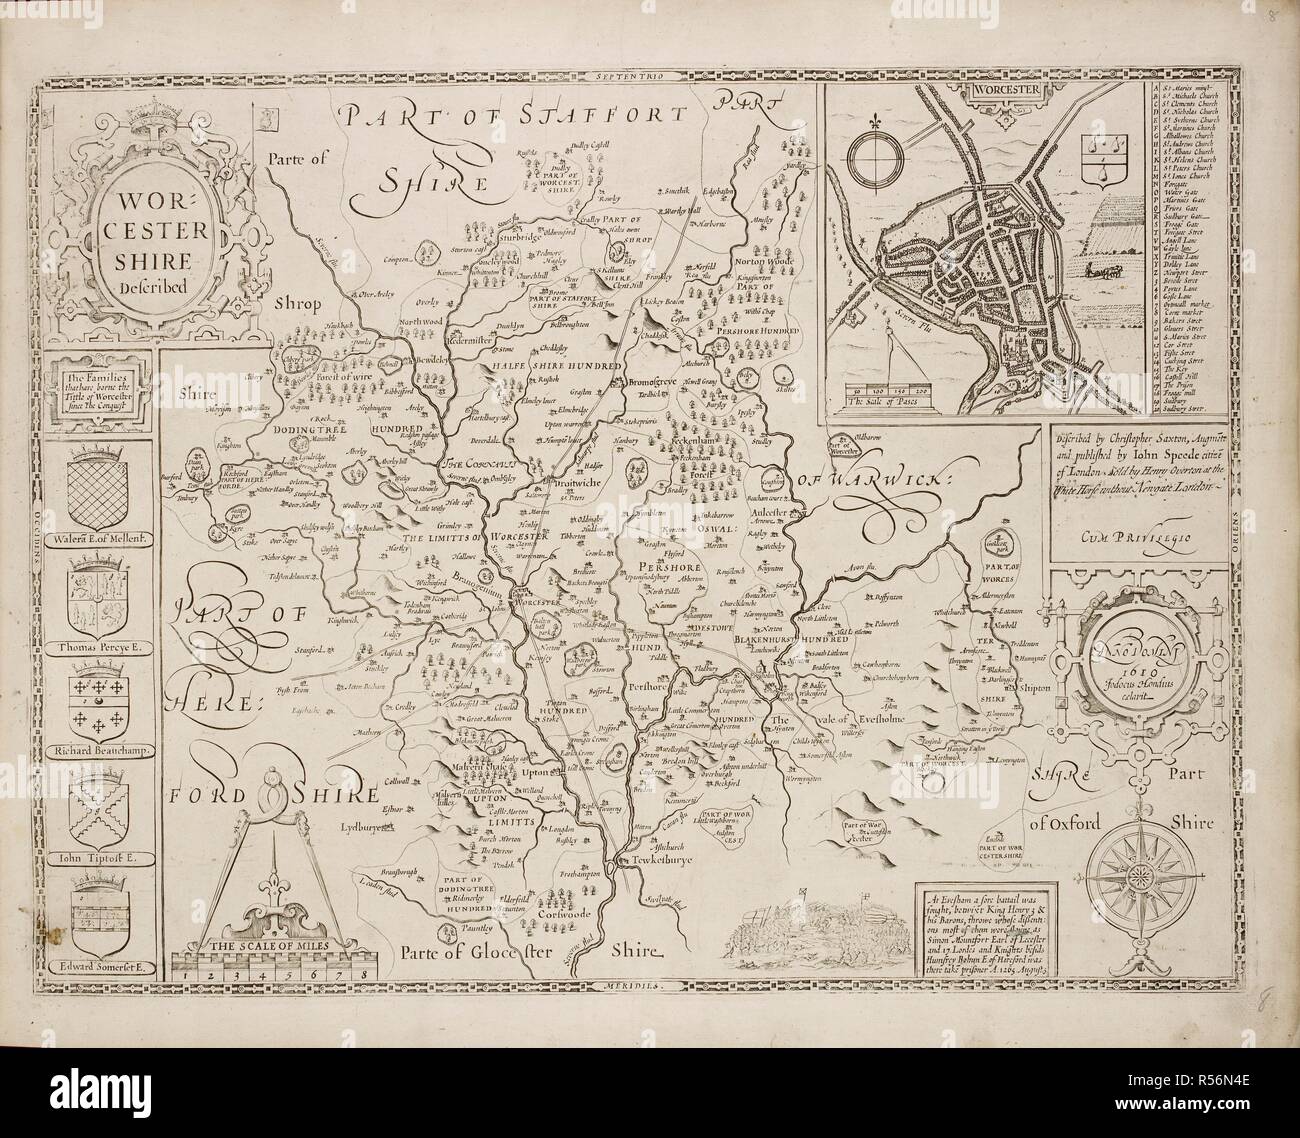 Un mapa del condado de Worcestershire. Escudos de Armas y de información topográfica. . Una colección de 37 mapas de los condados de Inglaterra. Londres. H. Overton, 1714. Una colección de 37 mapas de los condados de Inglaterra, siendo las reimpresiones, de J. Speedâ€™s mapas, por Henry Overton, junto con los de P. Stent Reimpreso por John Overton, y mapas de Derbyshire y Yorkshire grabado por S. Nicholls. Fuente: Maps.145.c.9 8. Idioma: Inglés. Foto de stock